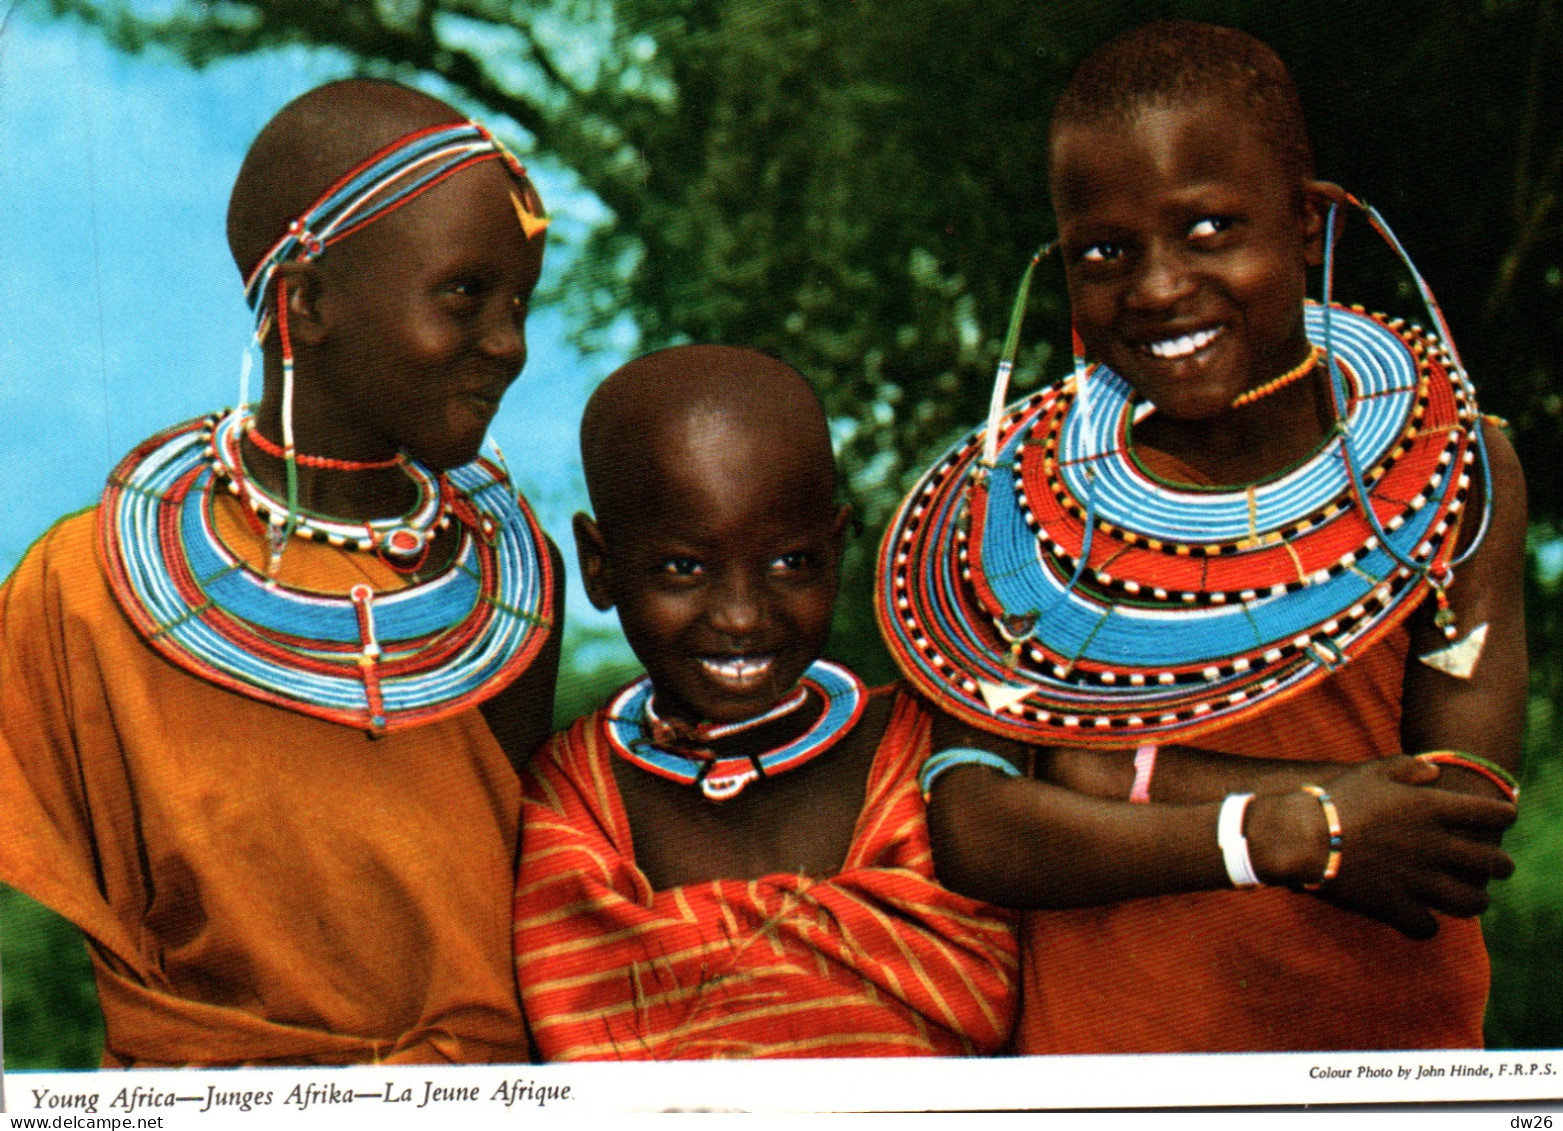 Ethnologie - Young Africa, Junges Afrika, La Jeune Afrique - Le Rire De L'enfant Africain Joyeux Et Contagieux - Africa